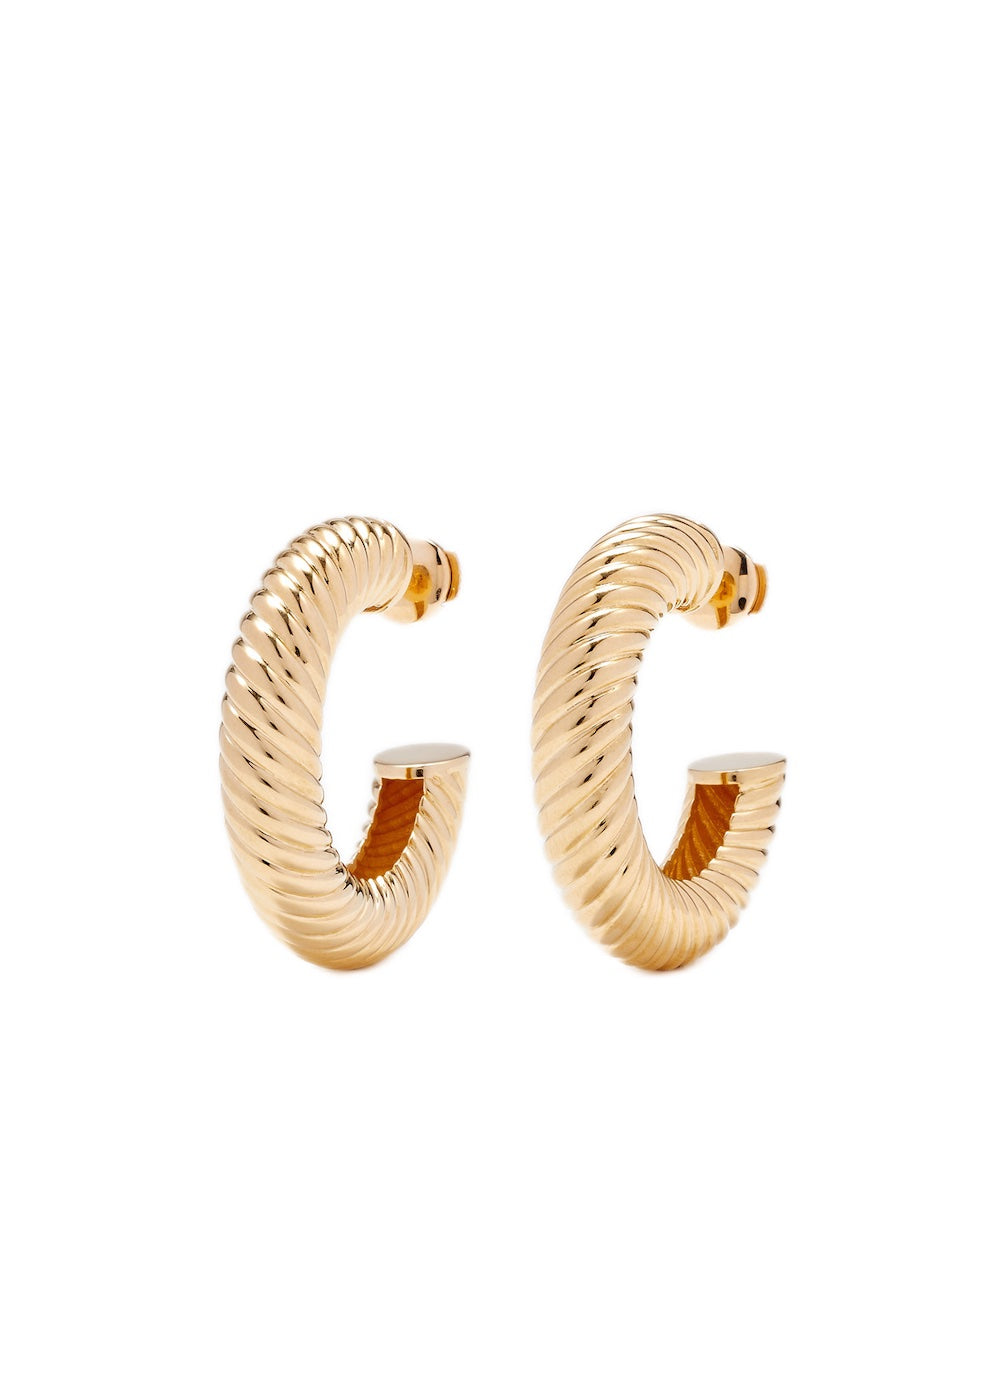 Gouttière 9k yellow gold hoop earrings